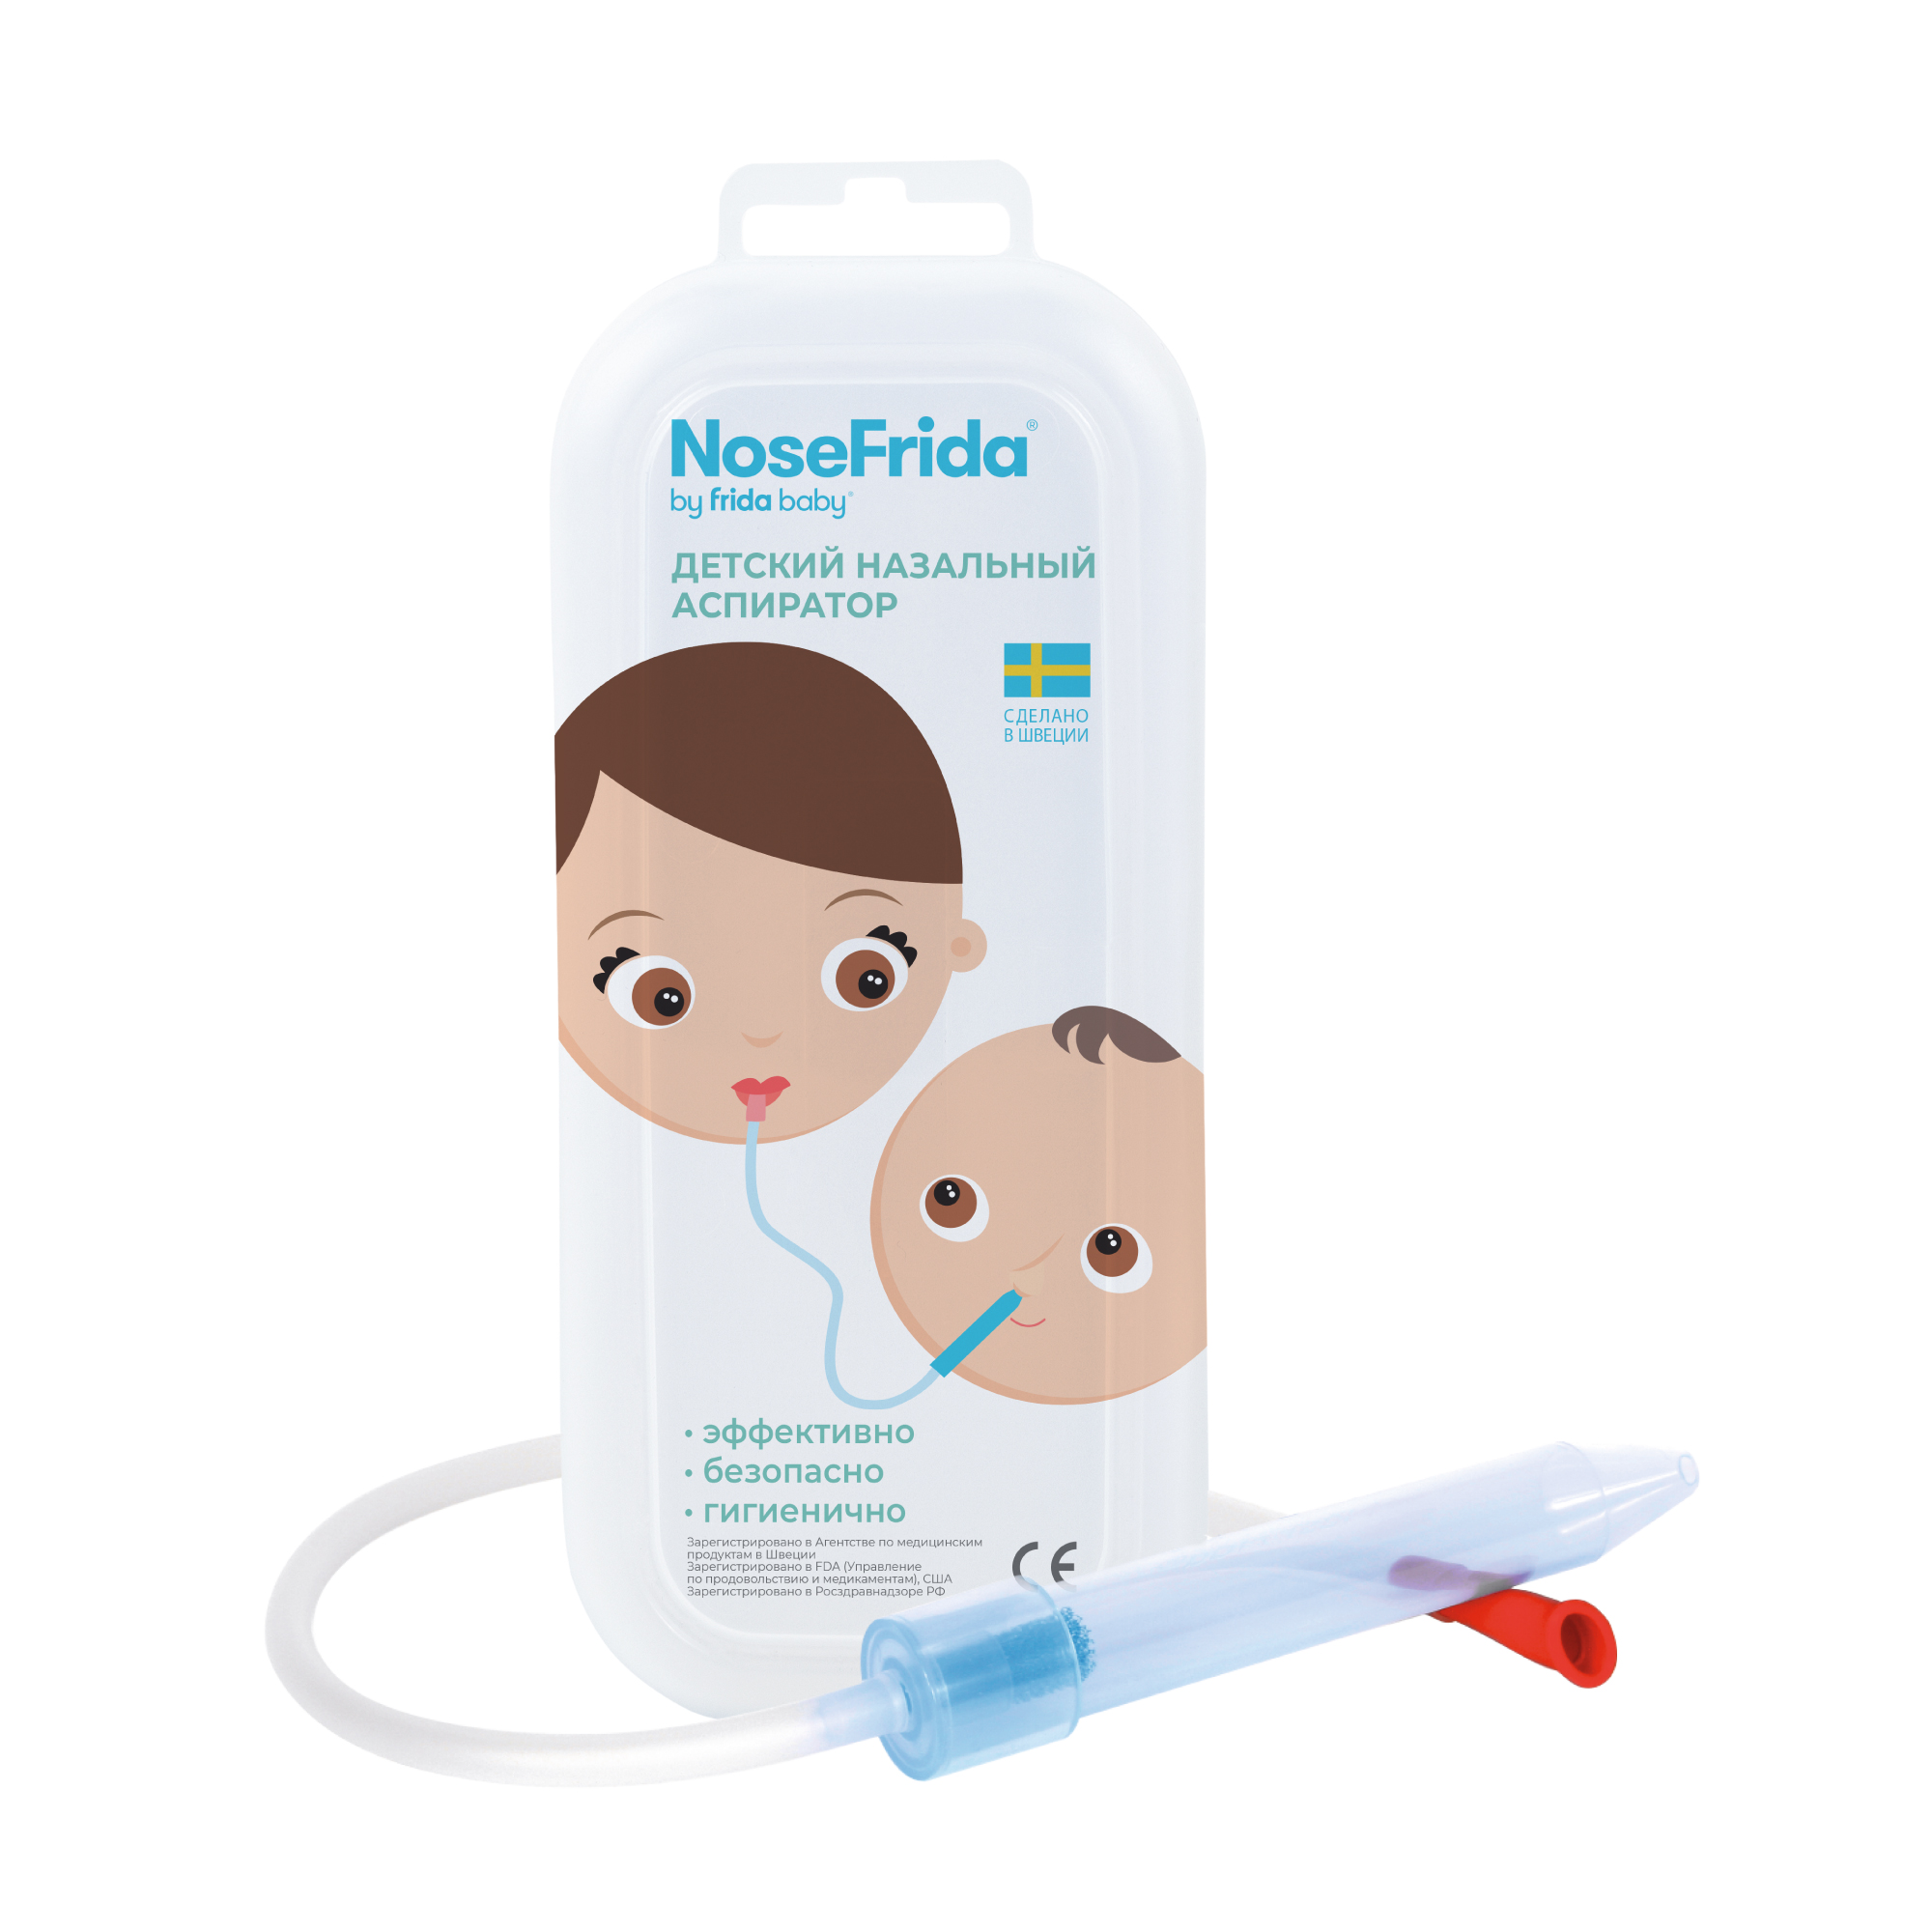 Nosefrida (Носфрида), аспиратор назальный для детей nosefrida носфрида аспиратор назальный для детей